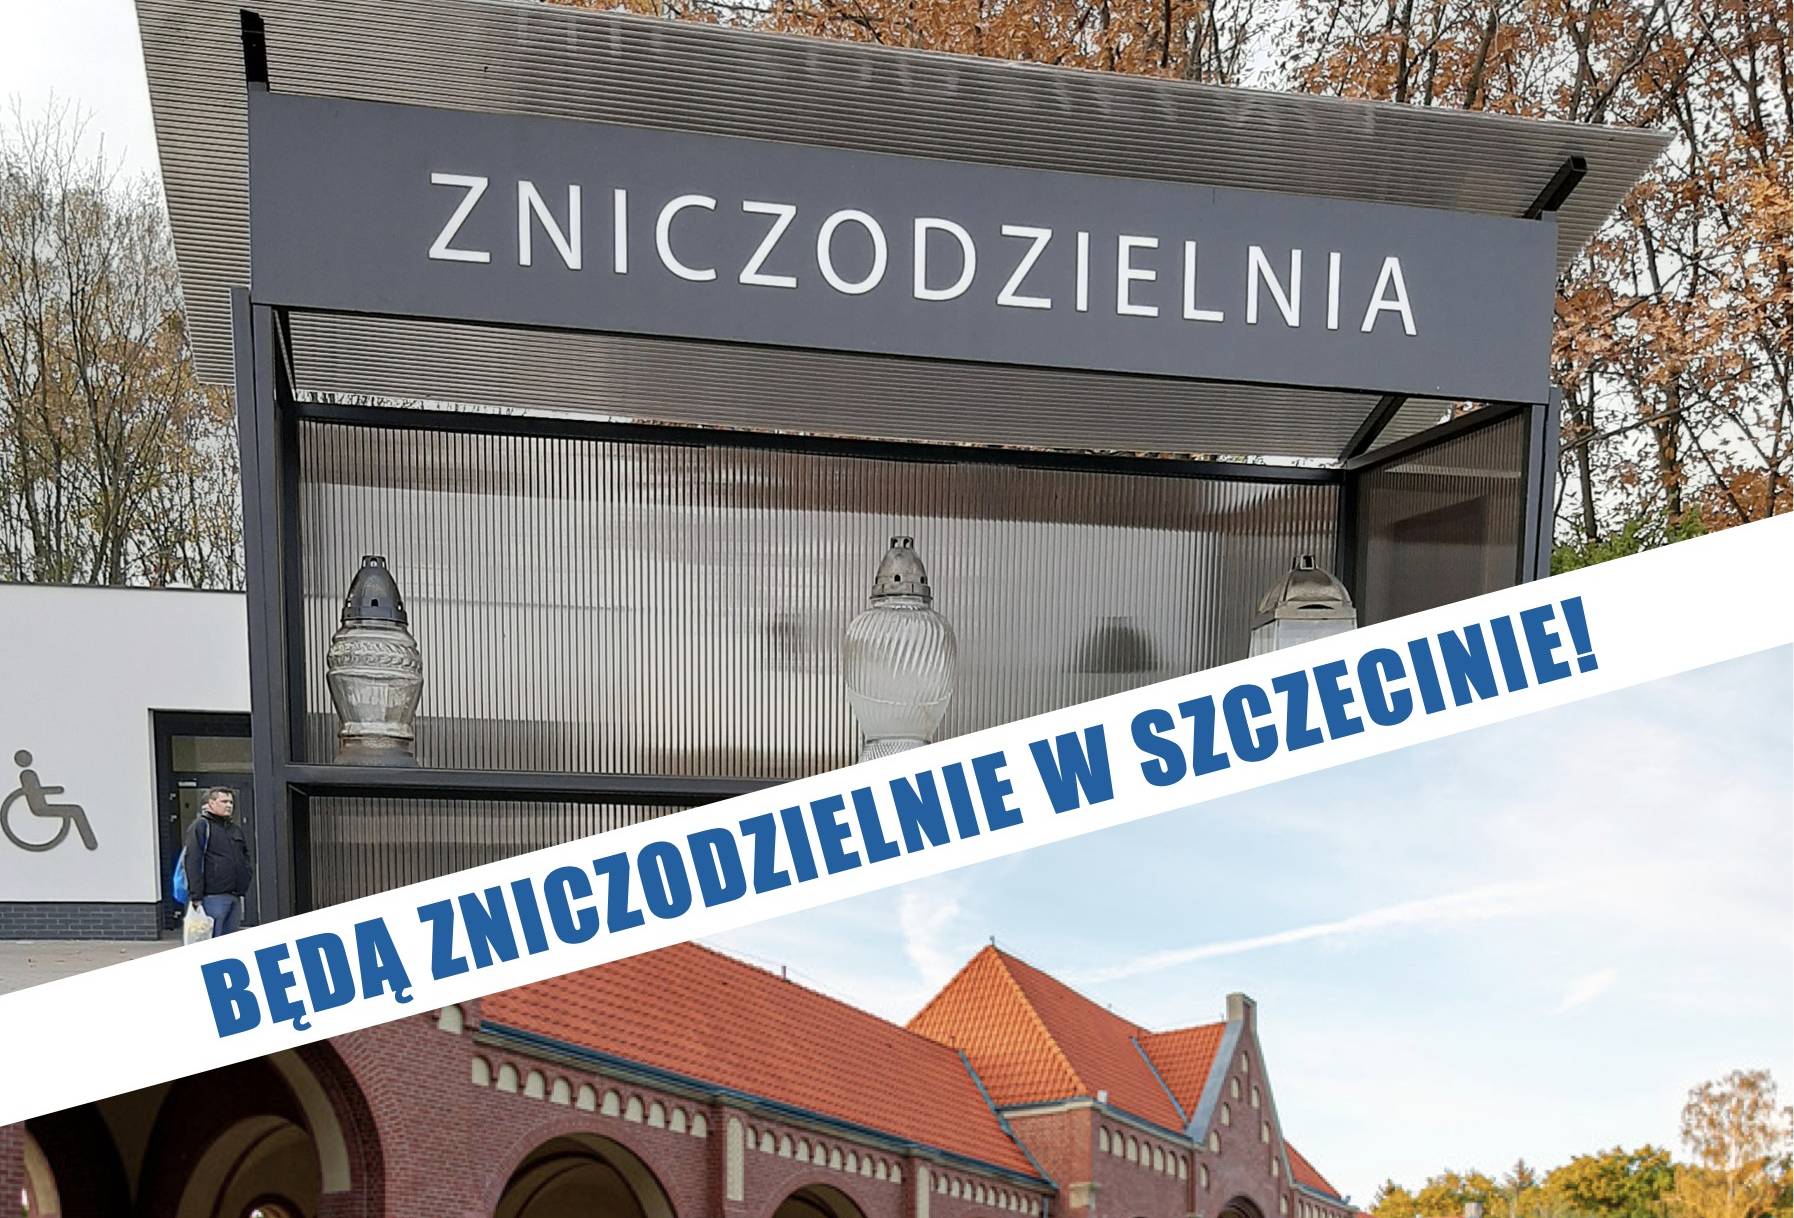 Pierwsza zniczodzielnia w Szczecinie